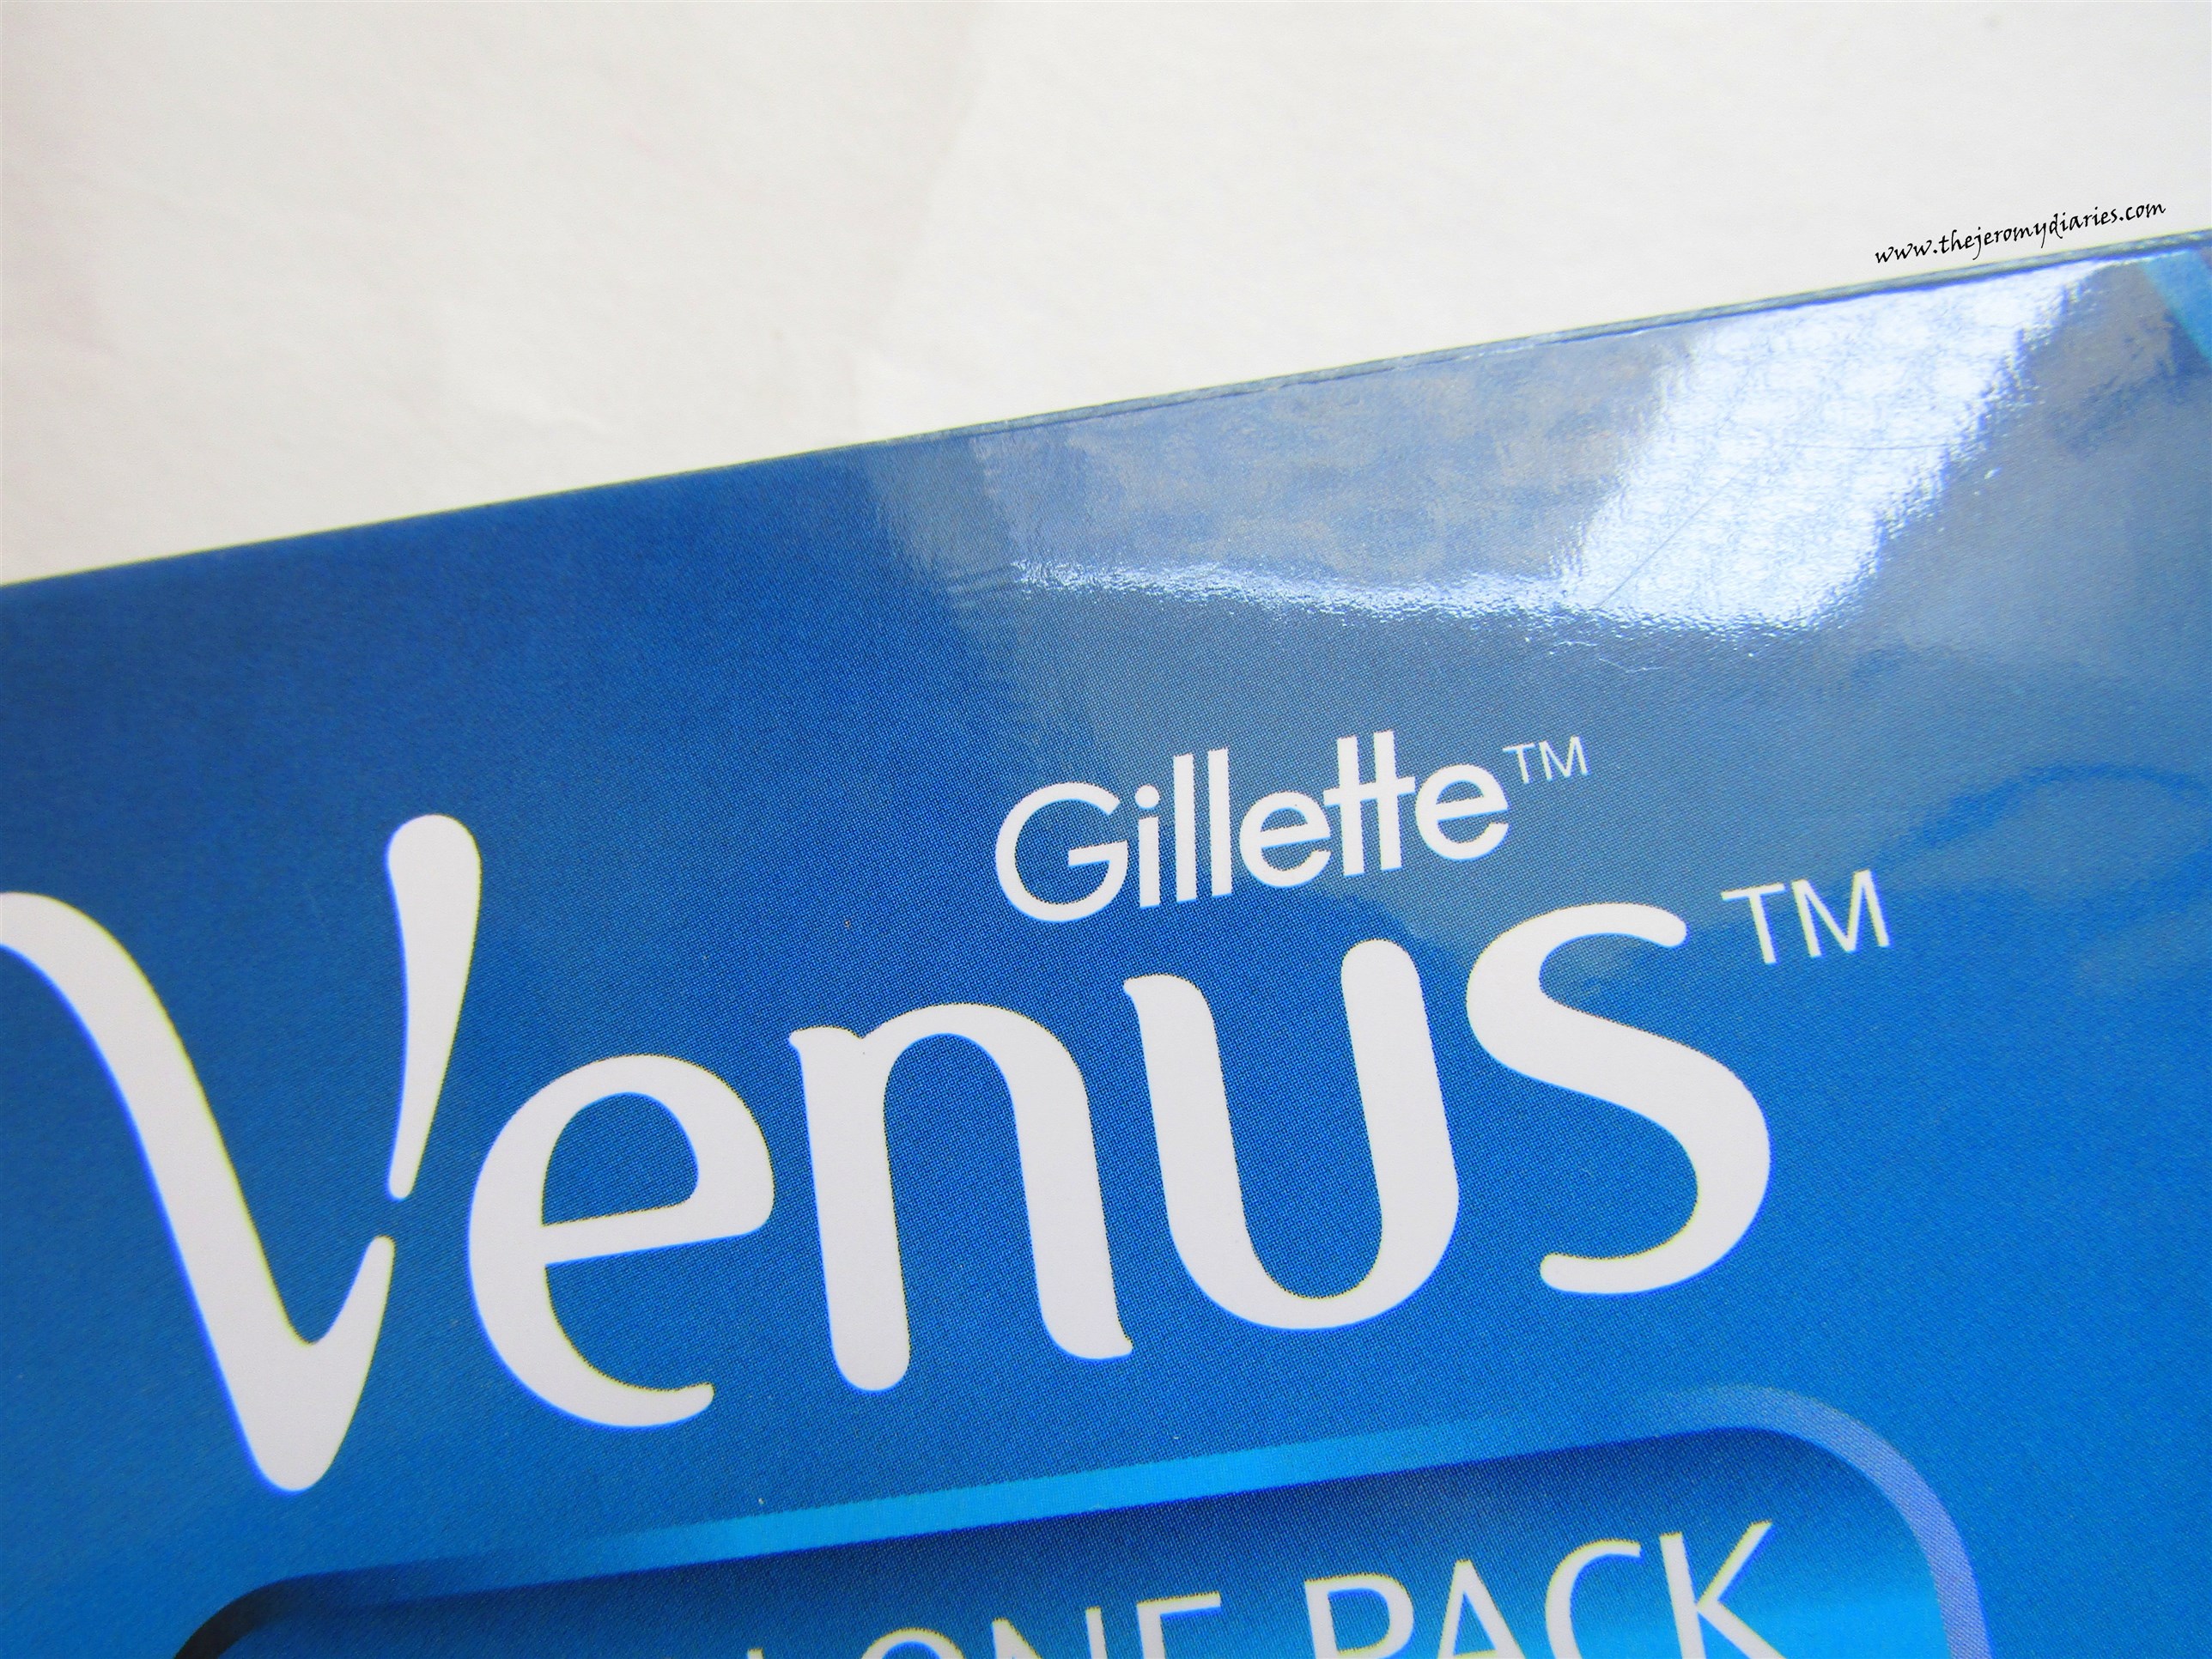 gillette venus all in one shaving pack